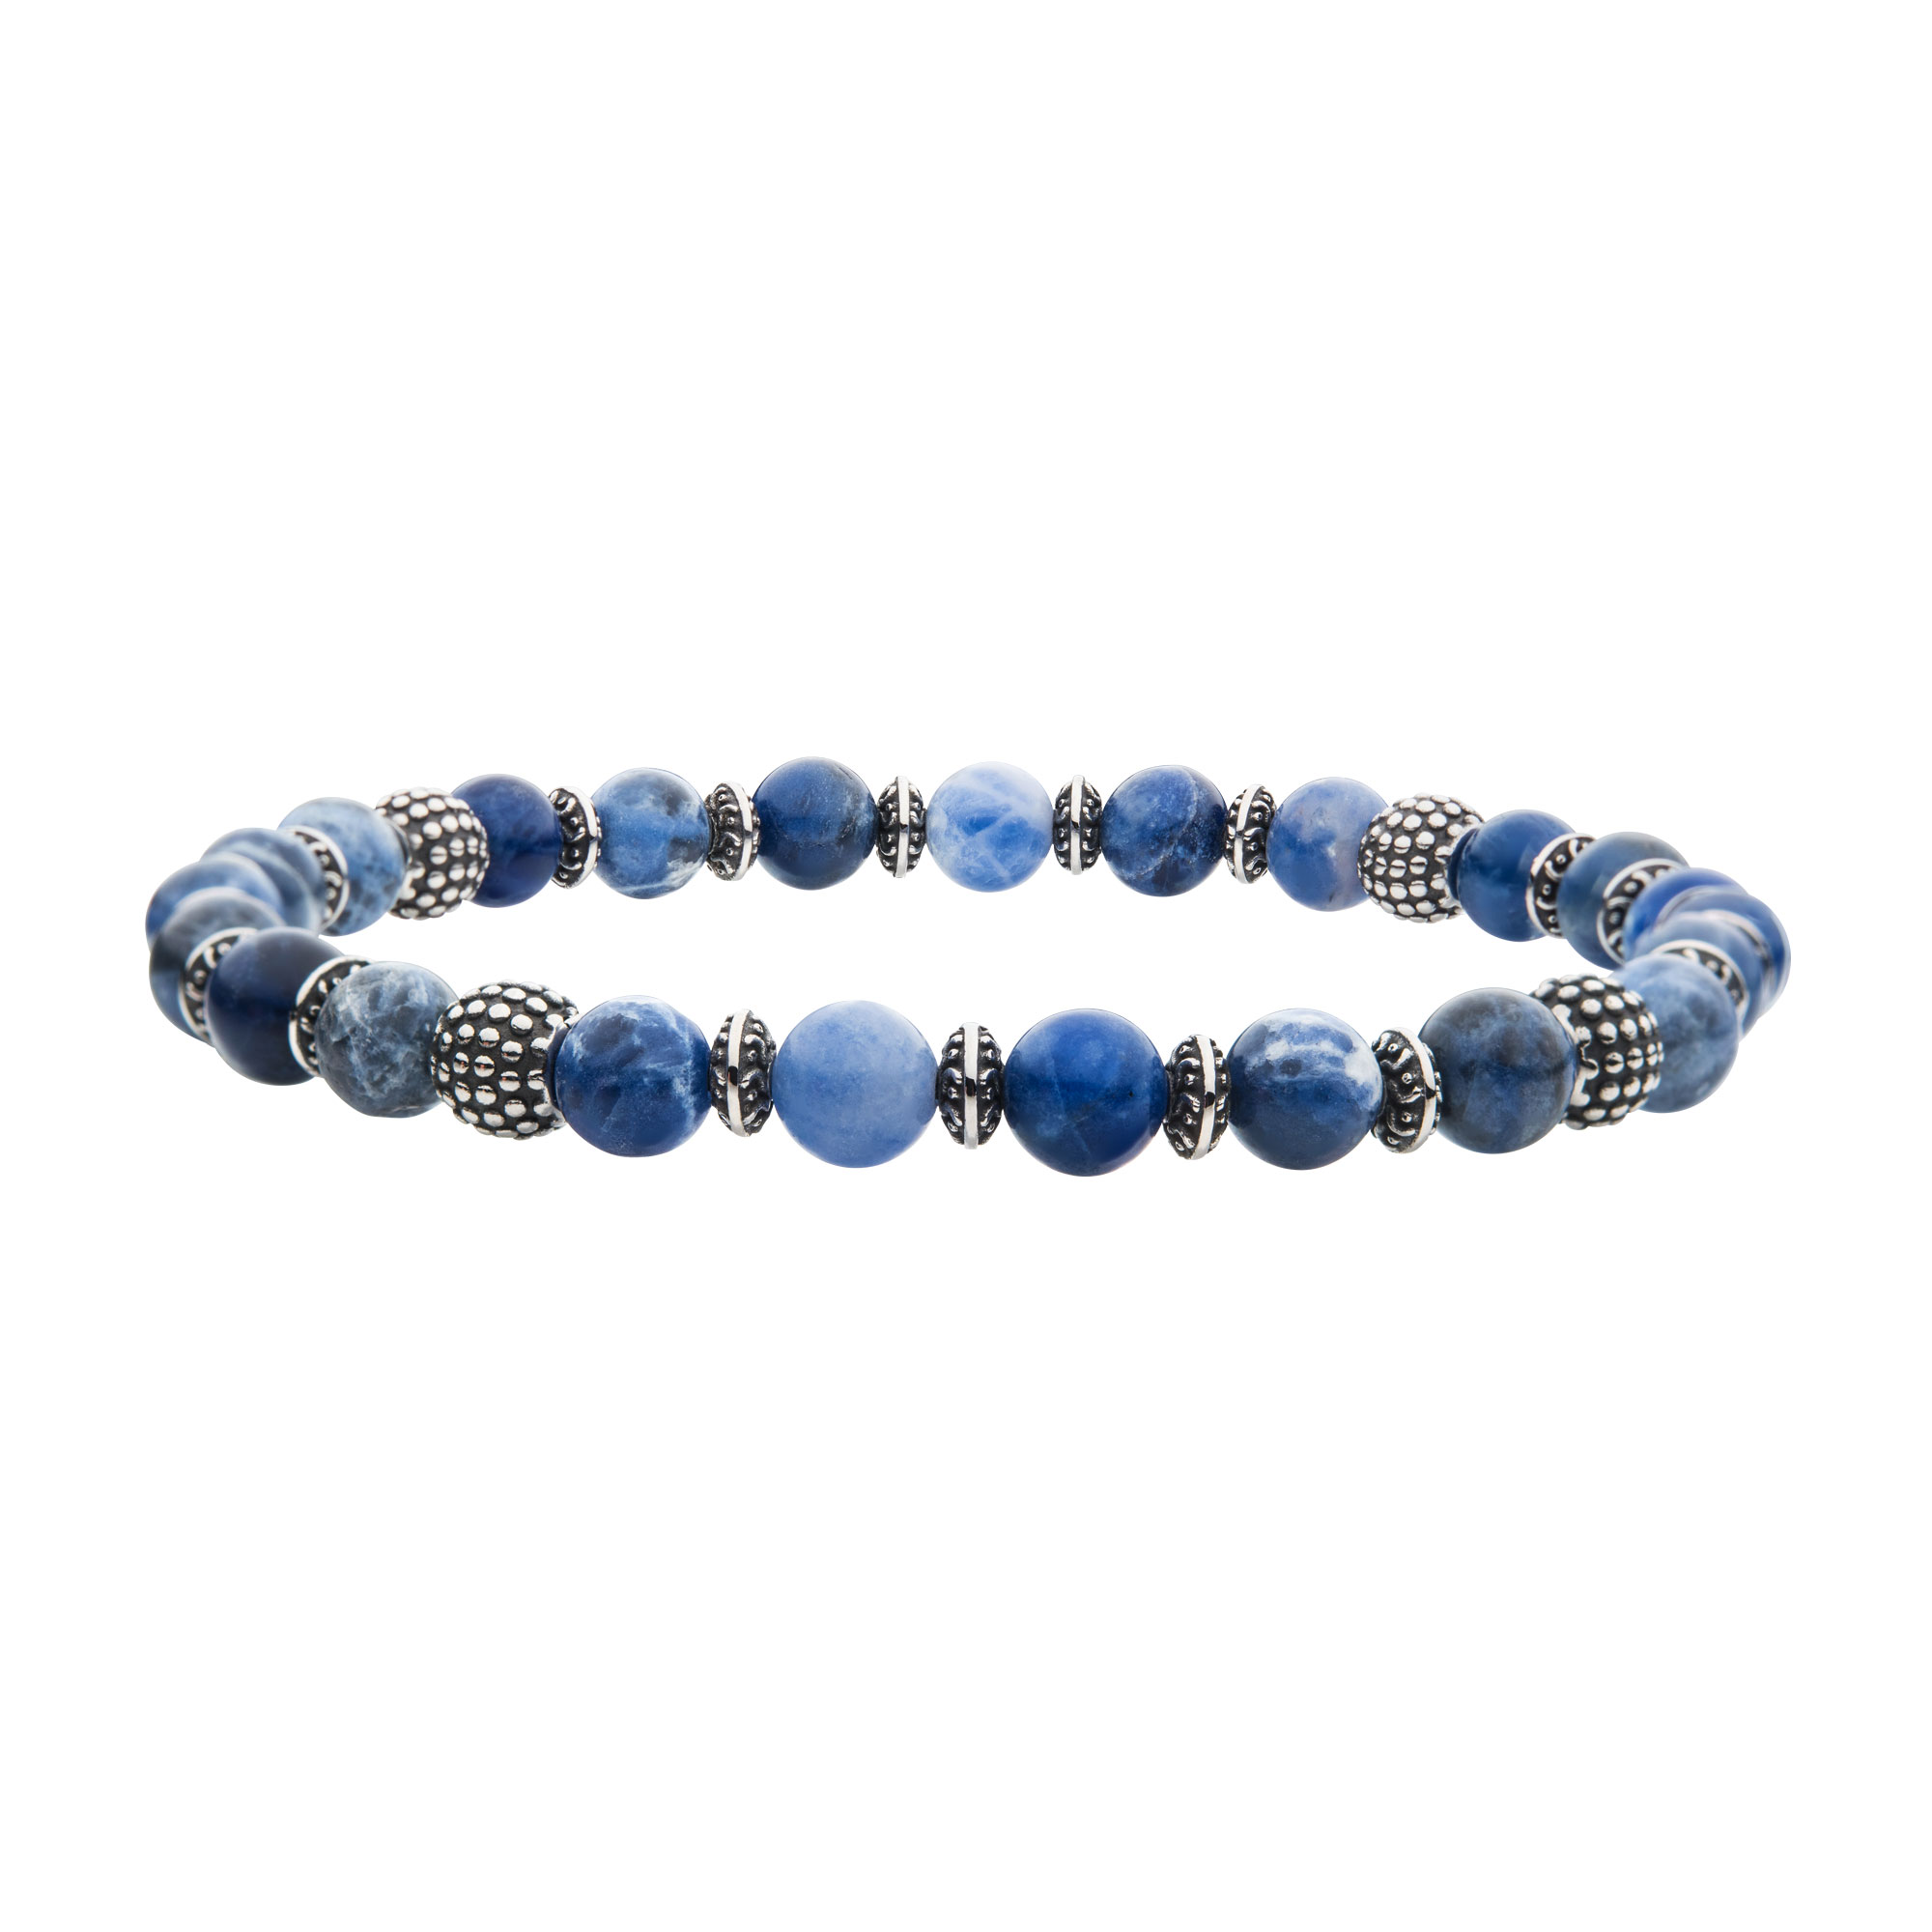 Blue Sodalite Stones with Black Oxidized Beads Bracelet Glatz Jewelry Aliquippa, PA